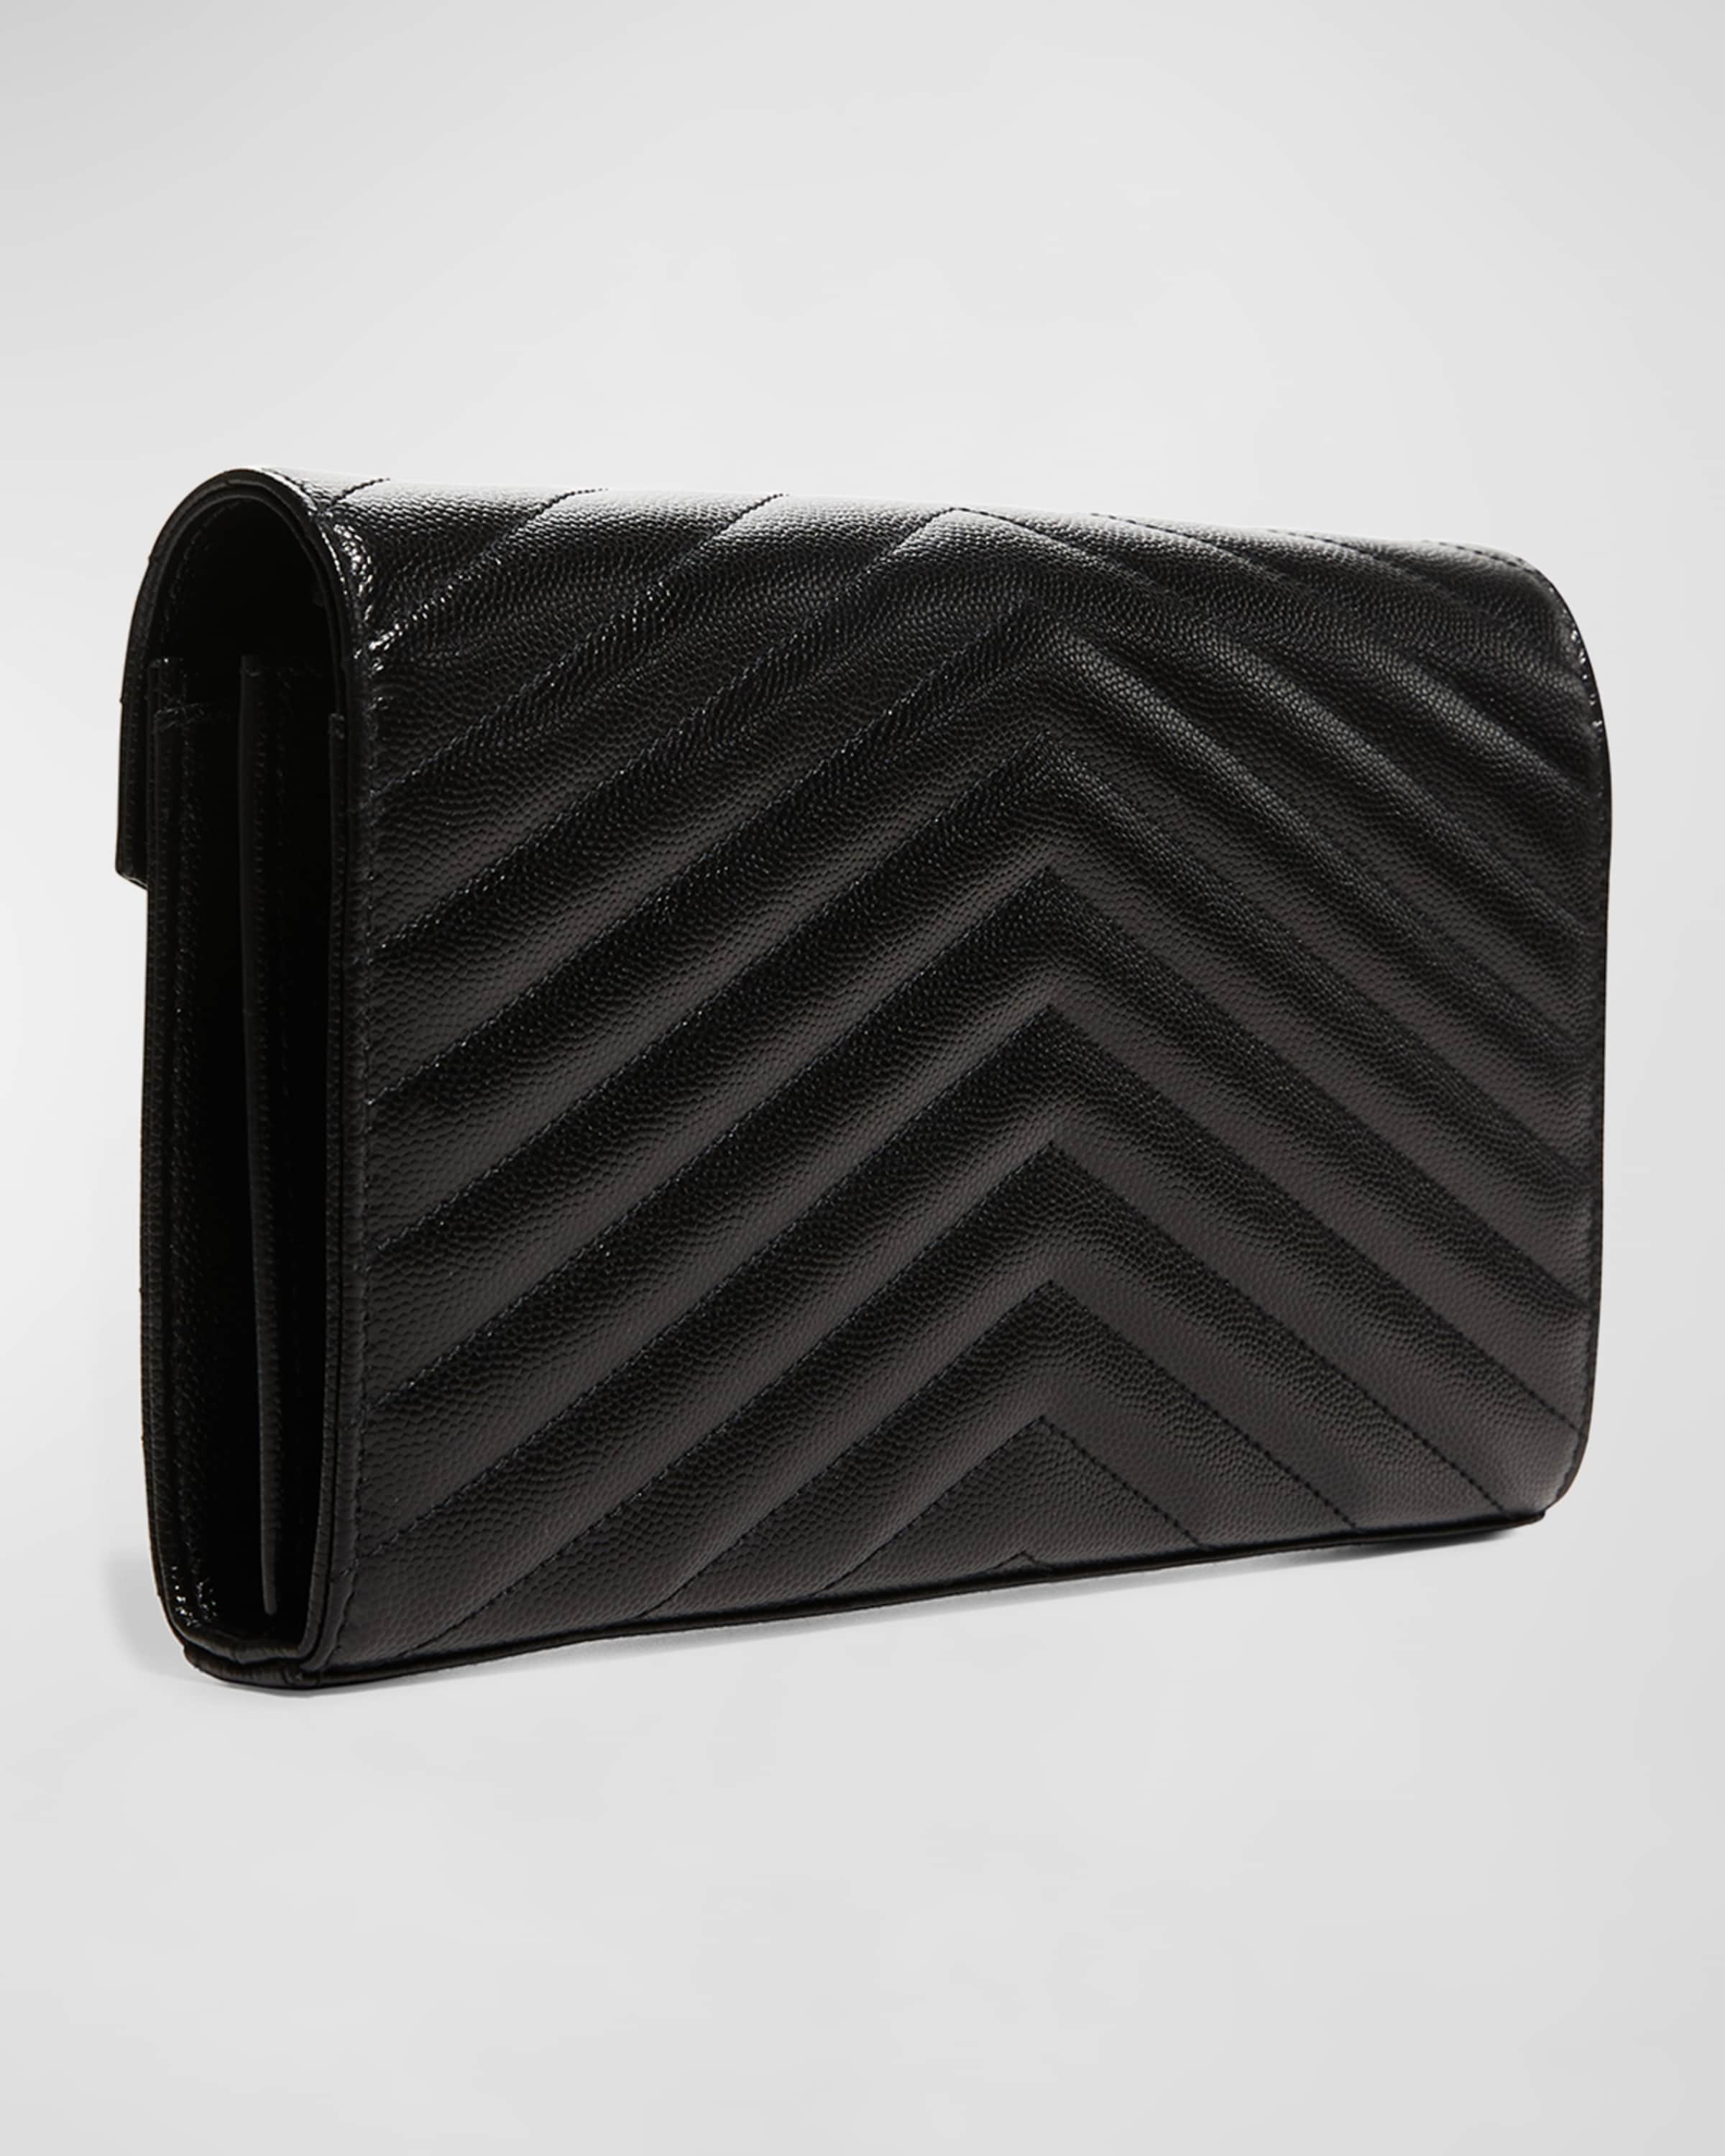 Monogramme Grain de Poudre Leather Wallet-on-Chain, Black Hardware - 4